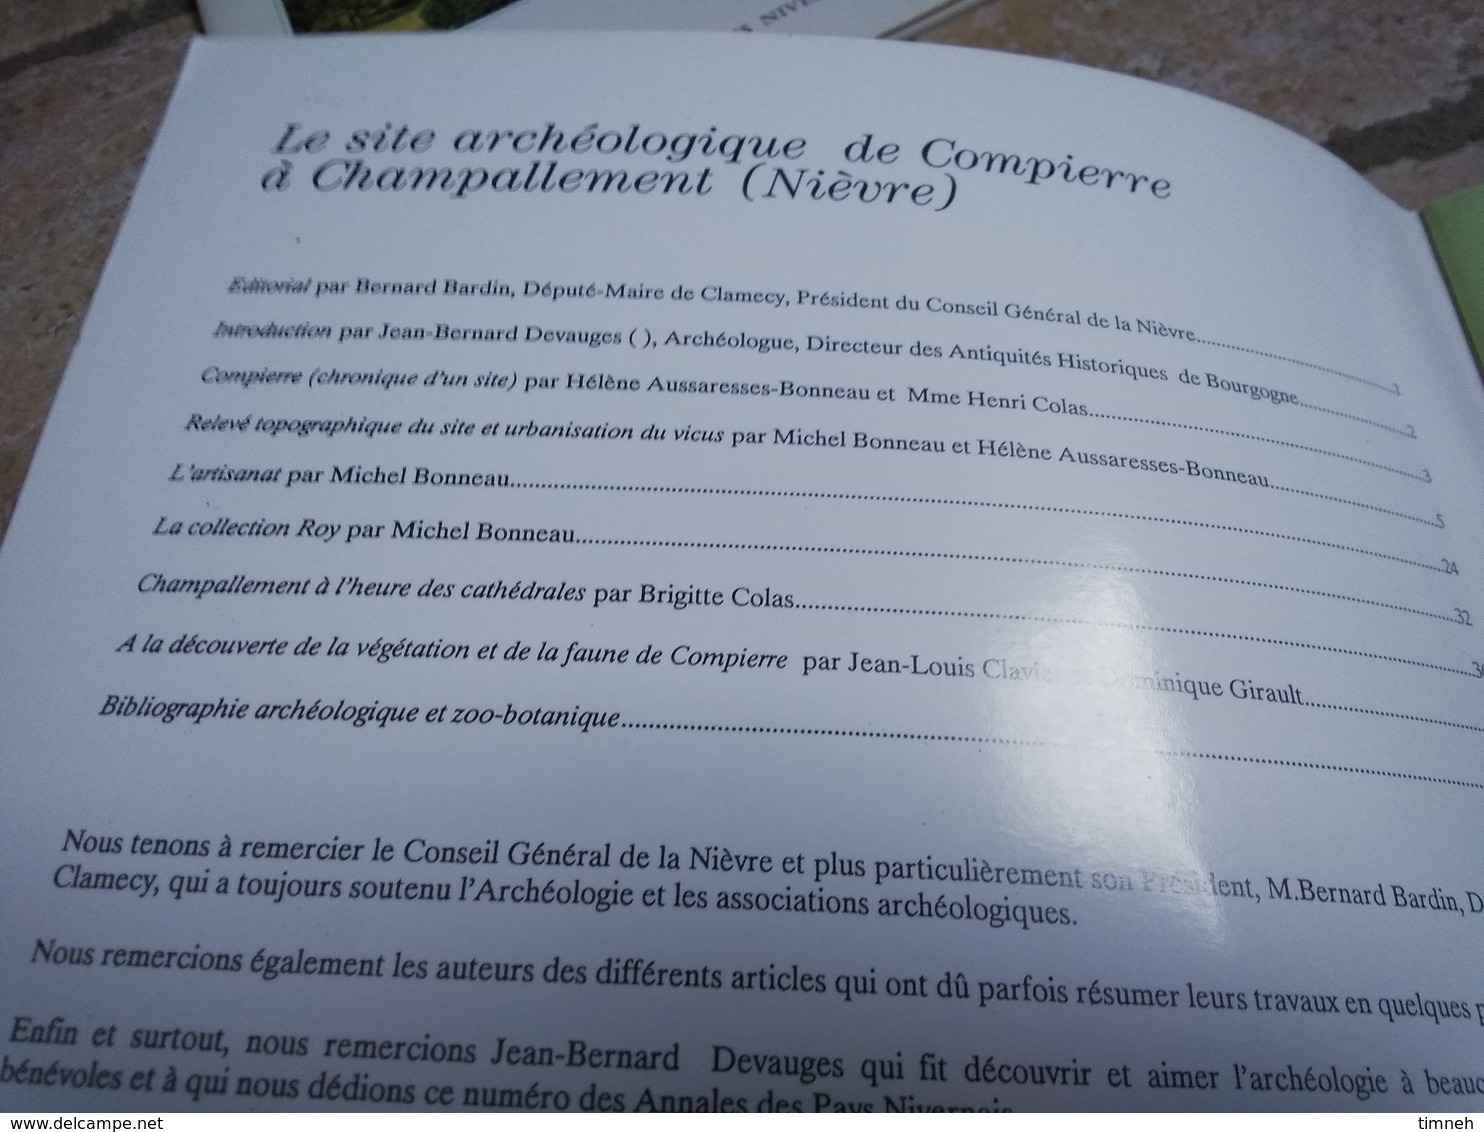 CAMOSINE - N°59 - COMPIERRE LE SITE ARCHEOLOGIQUE CHAMPALLEMENT - Les Annales Des Pays Nivernais 1989 - 42 Pages - Bourgogne